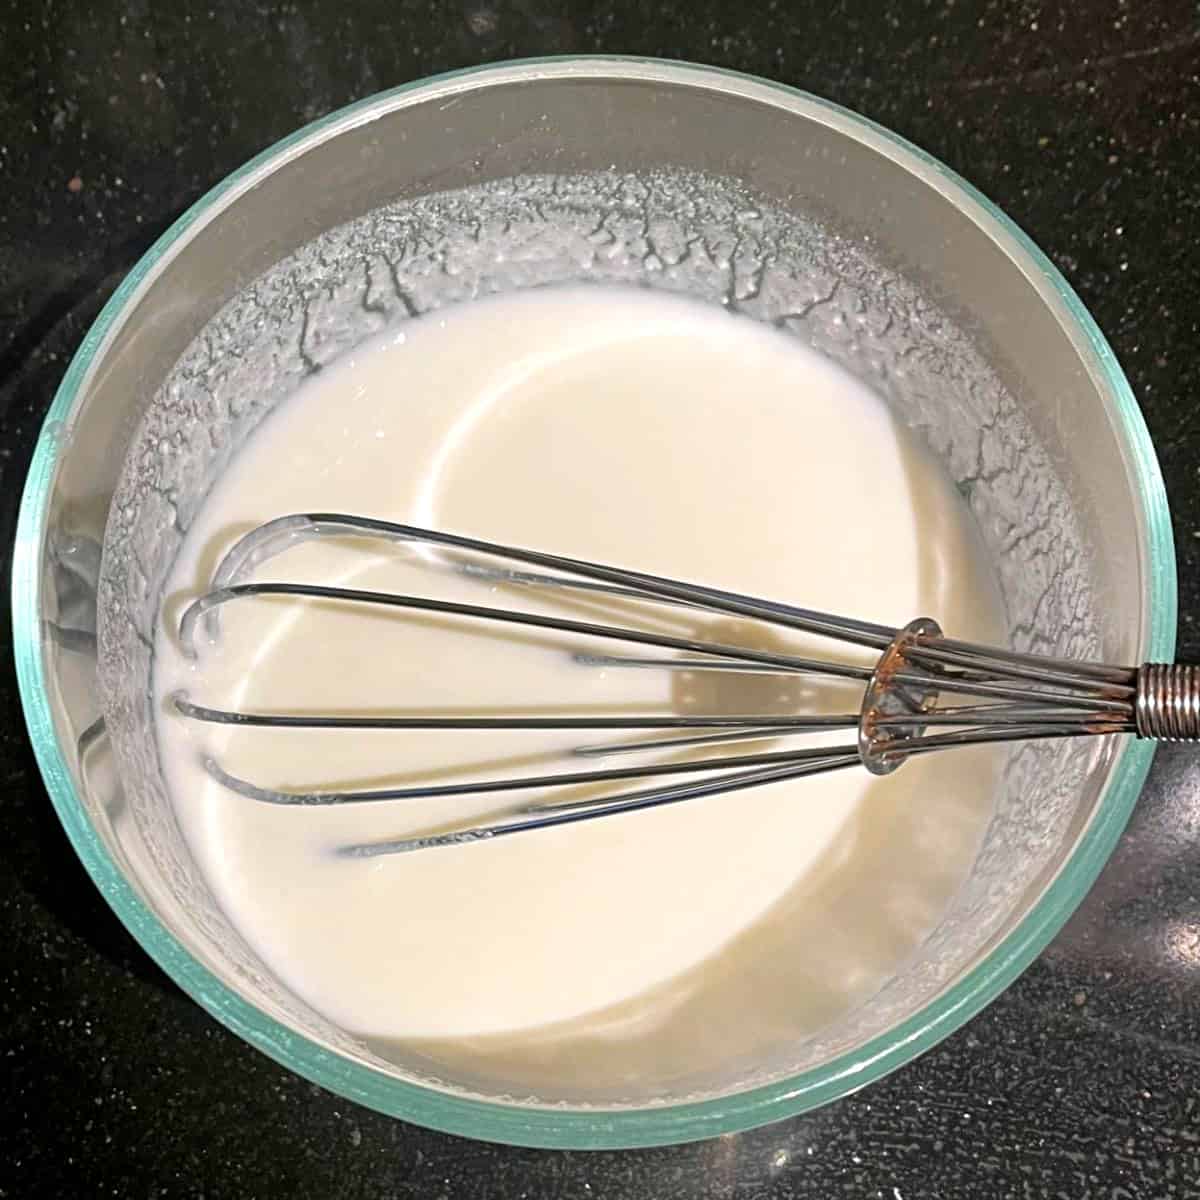 Vegan yogurt whisked with water in bowl.